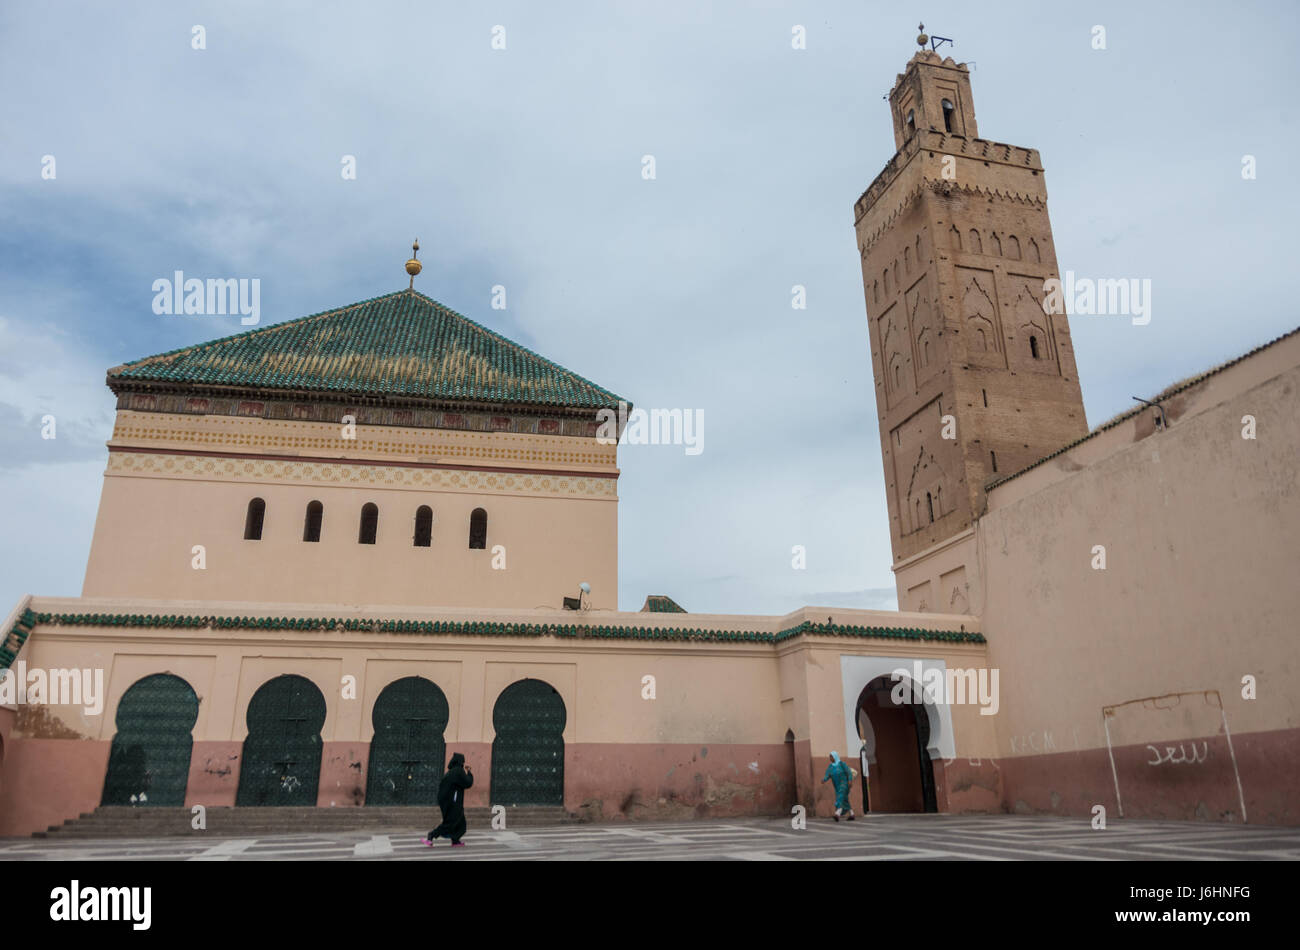 Cortile della moschea Zaouia de Sidi Bel Abbes nella medina di Marrakech, Marocco Foto Stock